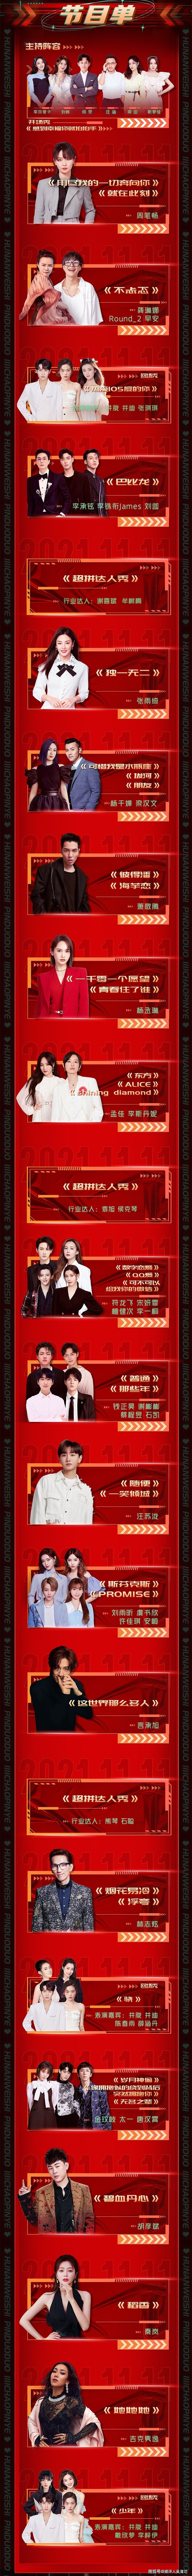 芒果台双11晚会节目单：刘雨昕流量最高，“浪姐”和“披哥”霸屏 - 1